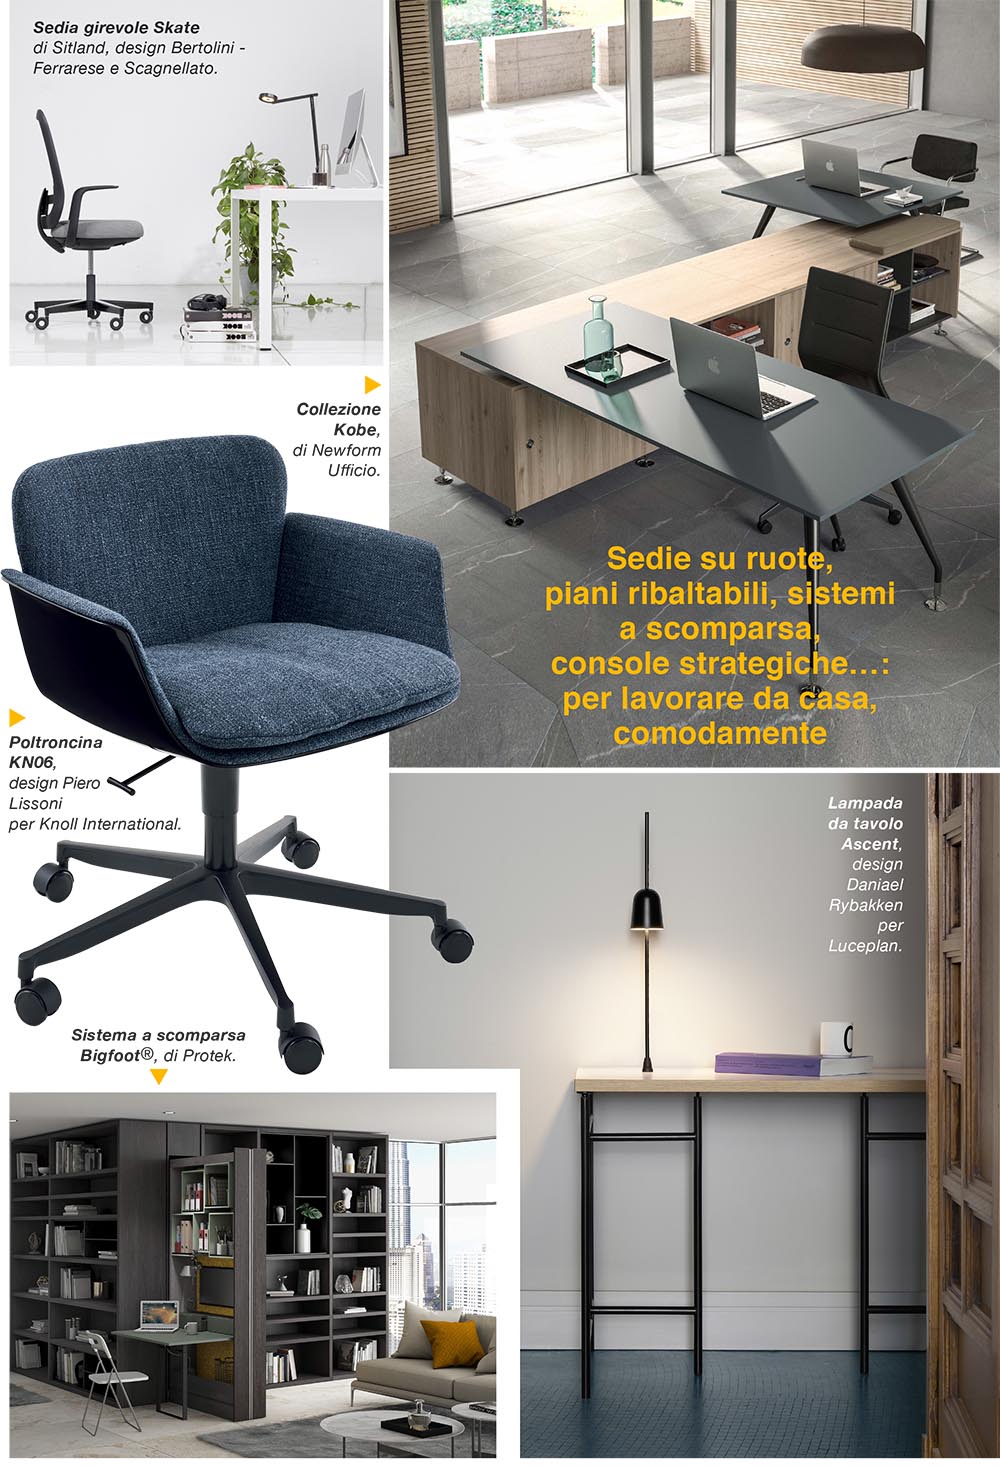 home-office-immobile-magazine-immobiliare-morabito-4.jpg